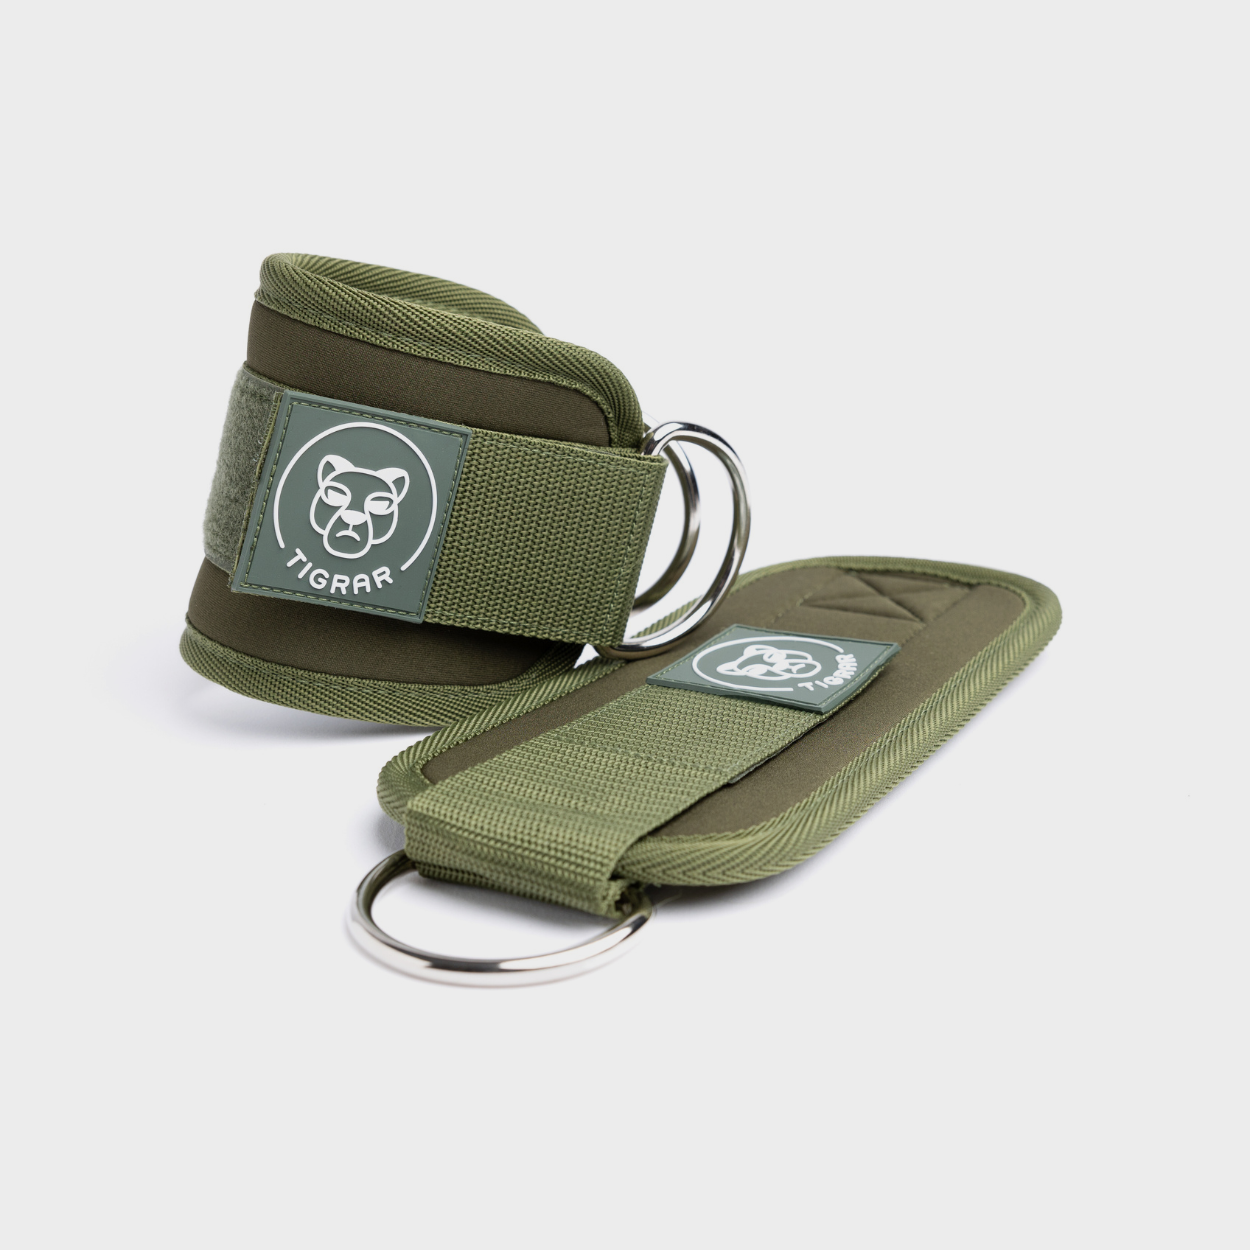 Groene Tigrar enkelbanden met verstelbare straps en zachte voering voor extra comfort. Verbetert stabiliteit en balans. Geschikt voor krachttraining oefeningen.